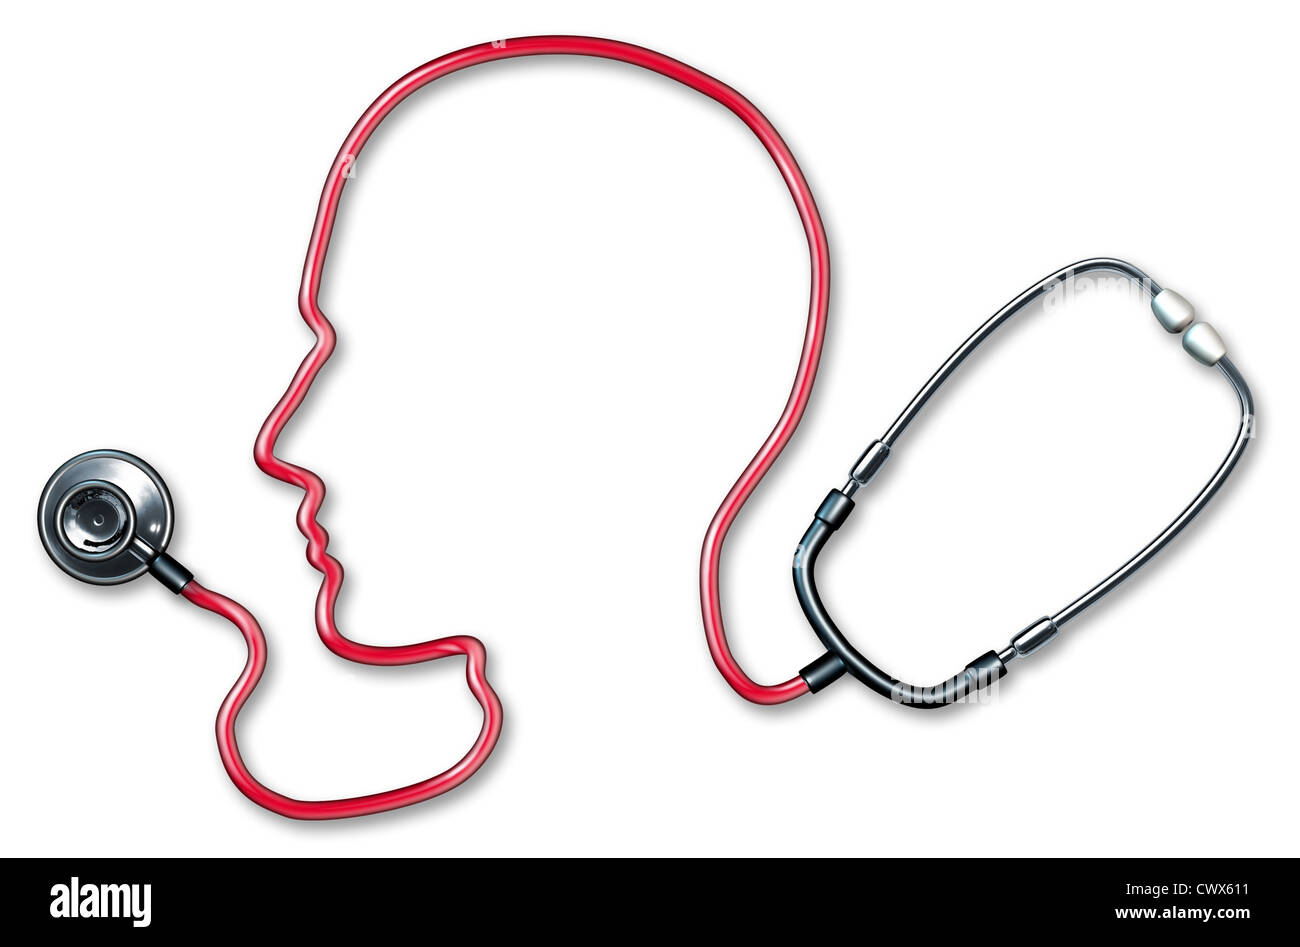 Les droits de la santé mentale avec un cordon rouge stéthoscope dans la forme d'une tête humaine et du cerveau utilisées dans une clinique pour un examen médical par des médecins sur un fond blanc qui représente le concept de bon esprit et de la santé neurologique dépression alzheimer médecine. Banque D'Images